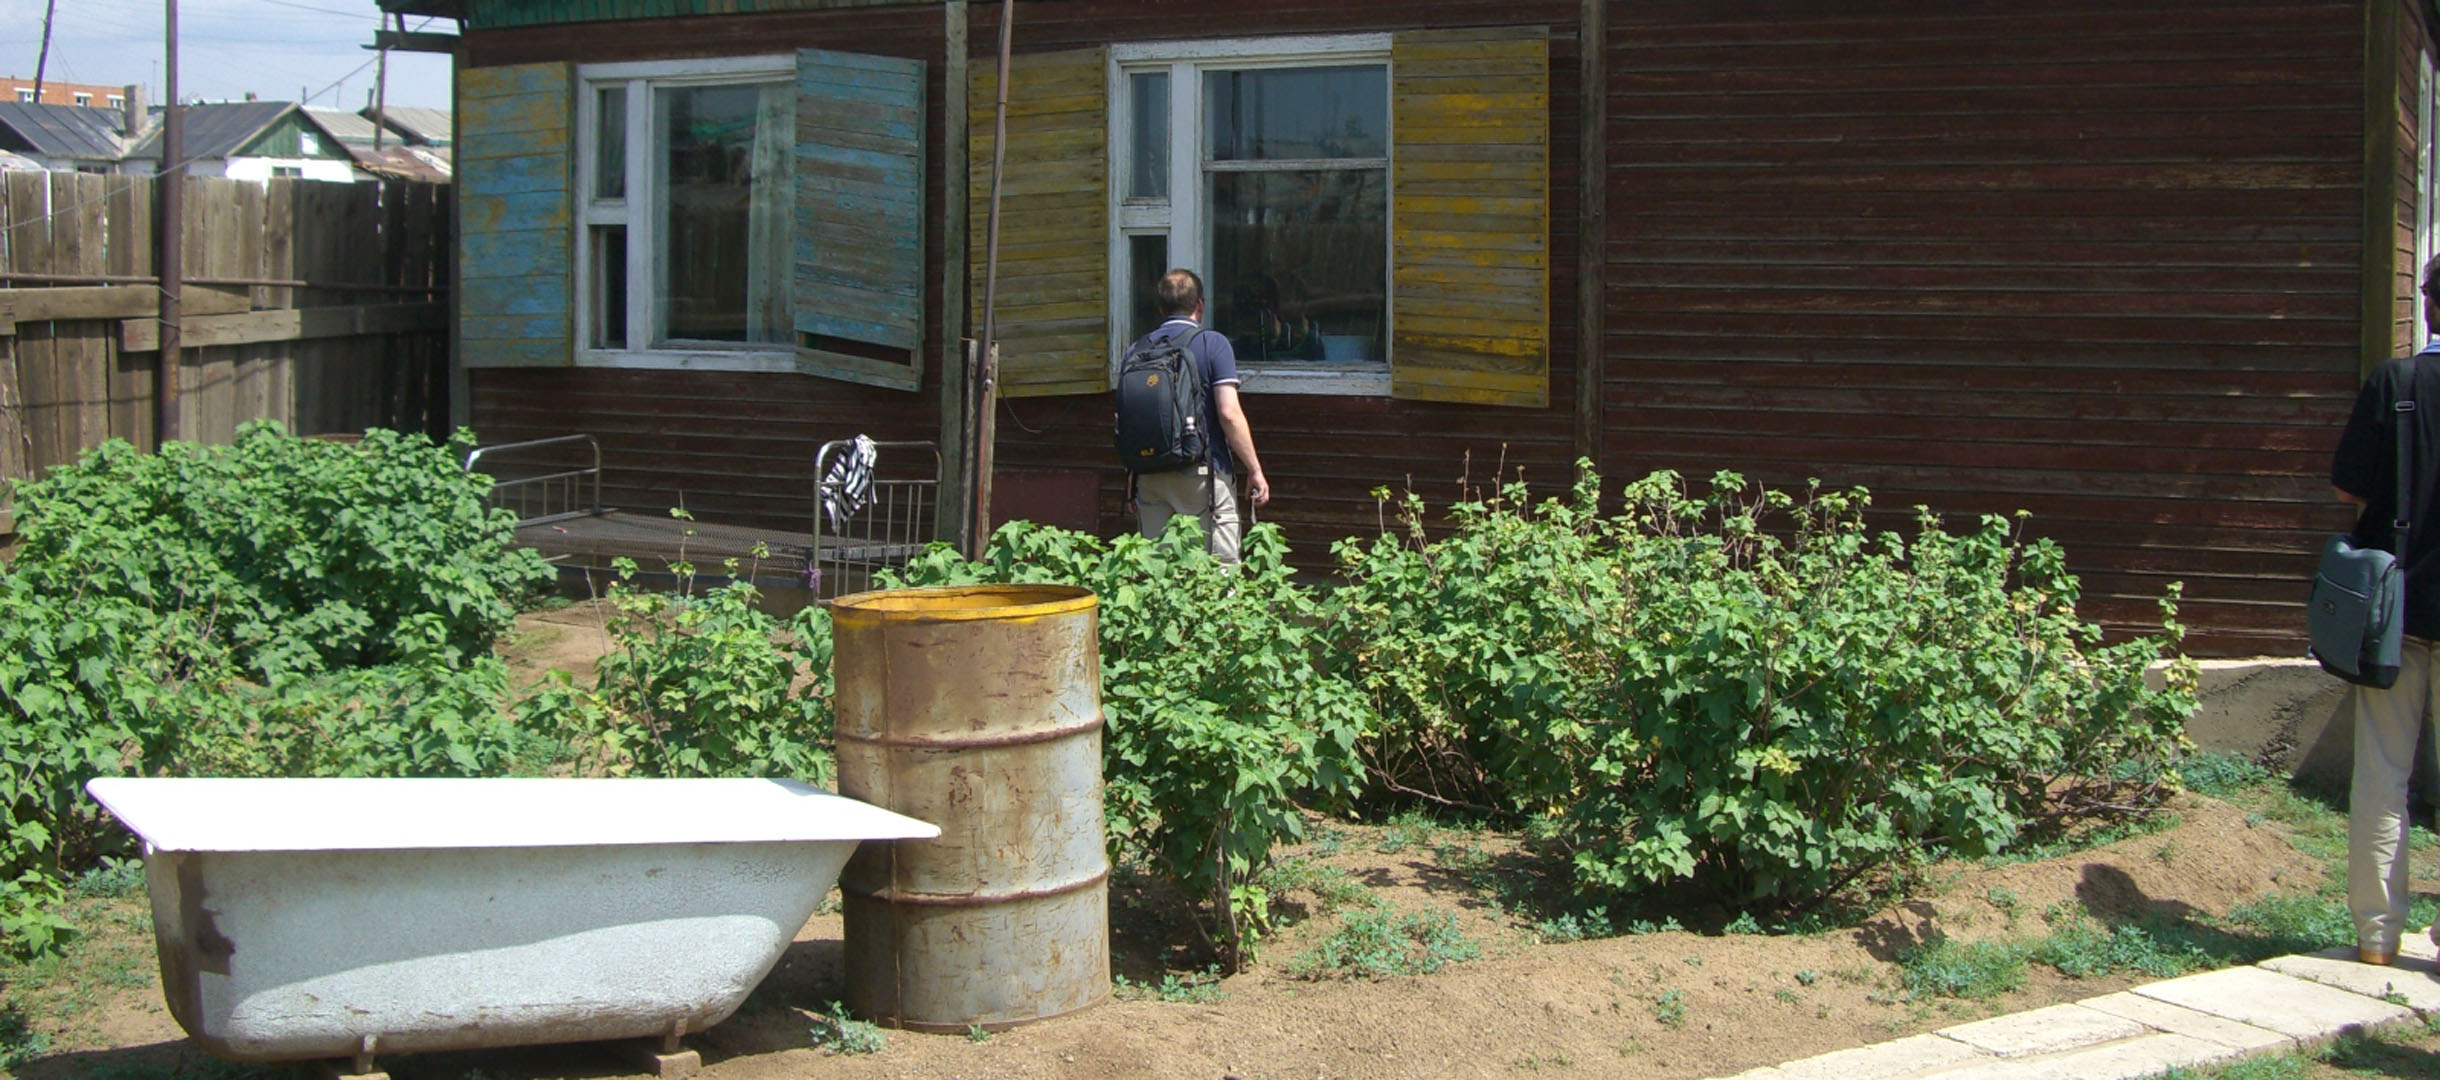 In Tolgoit erhielten die Menschen Schulungen zu einer nachhaltigen Landwirtschaft